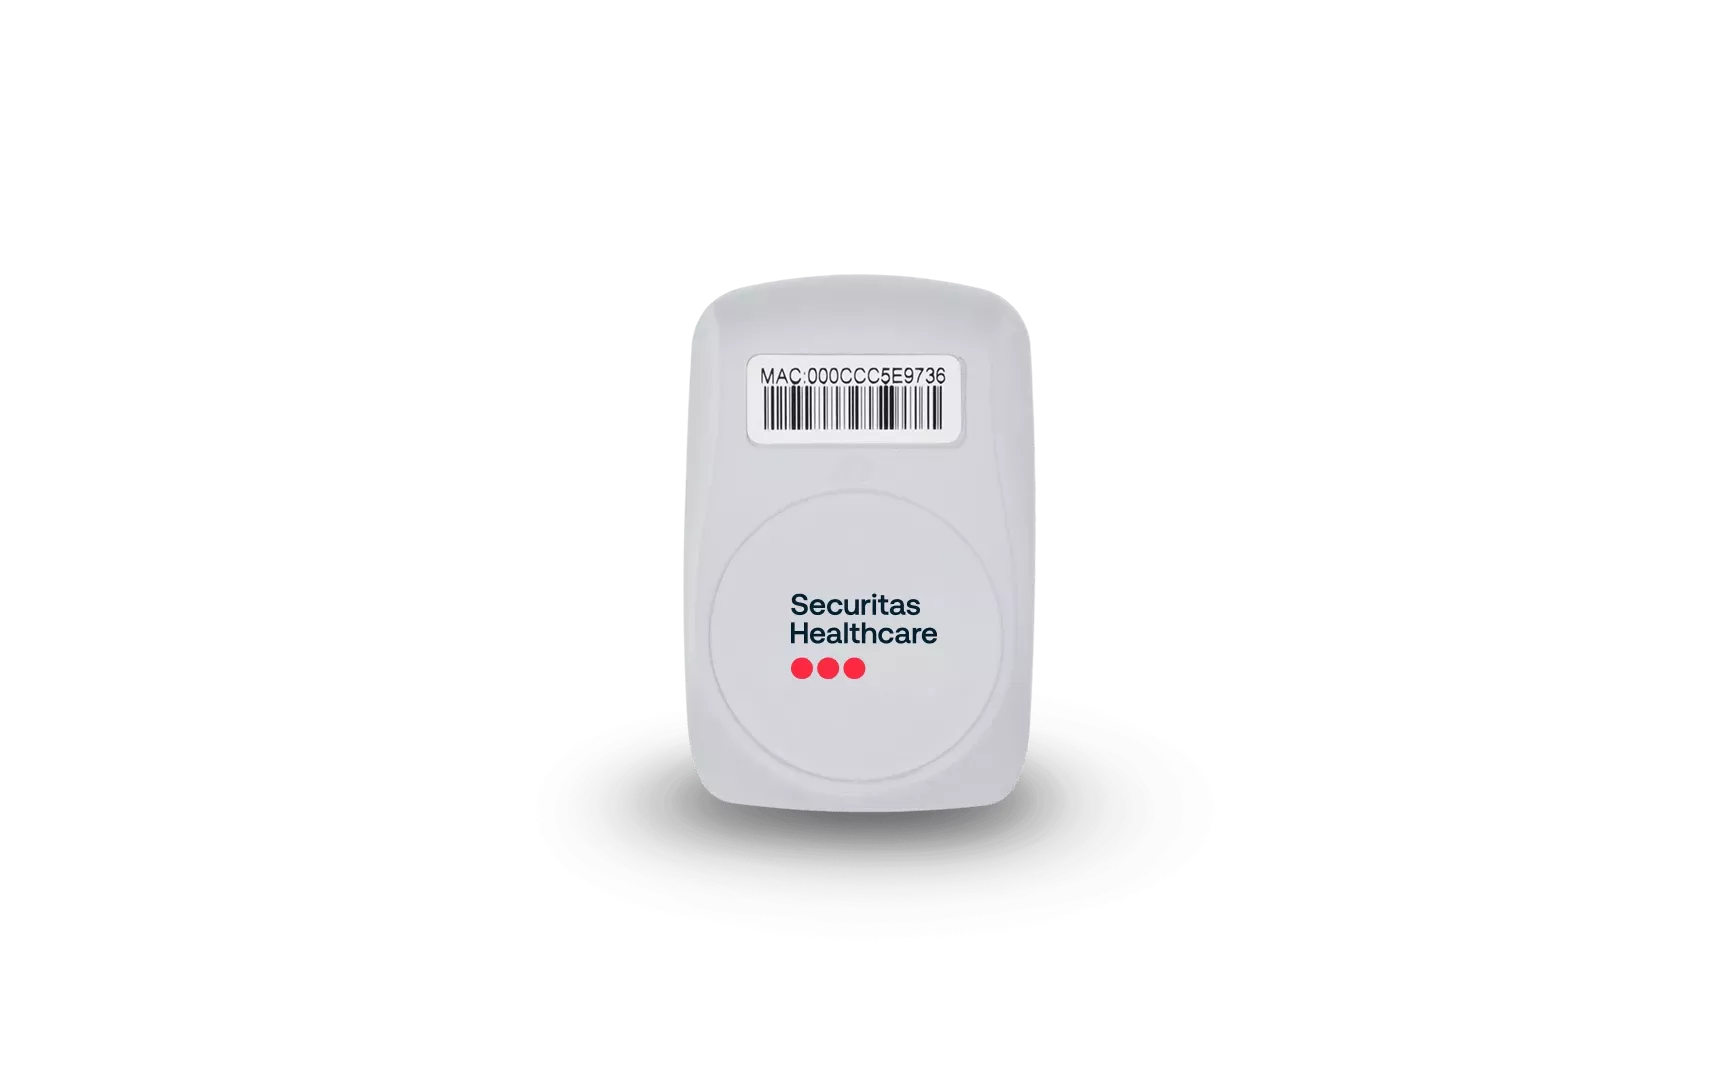 Securitas Healthcare T5 temperature monitoring badge